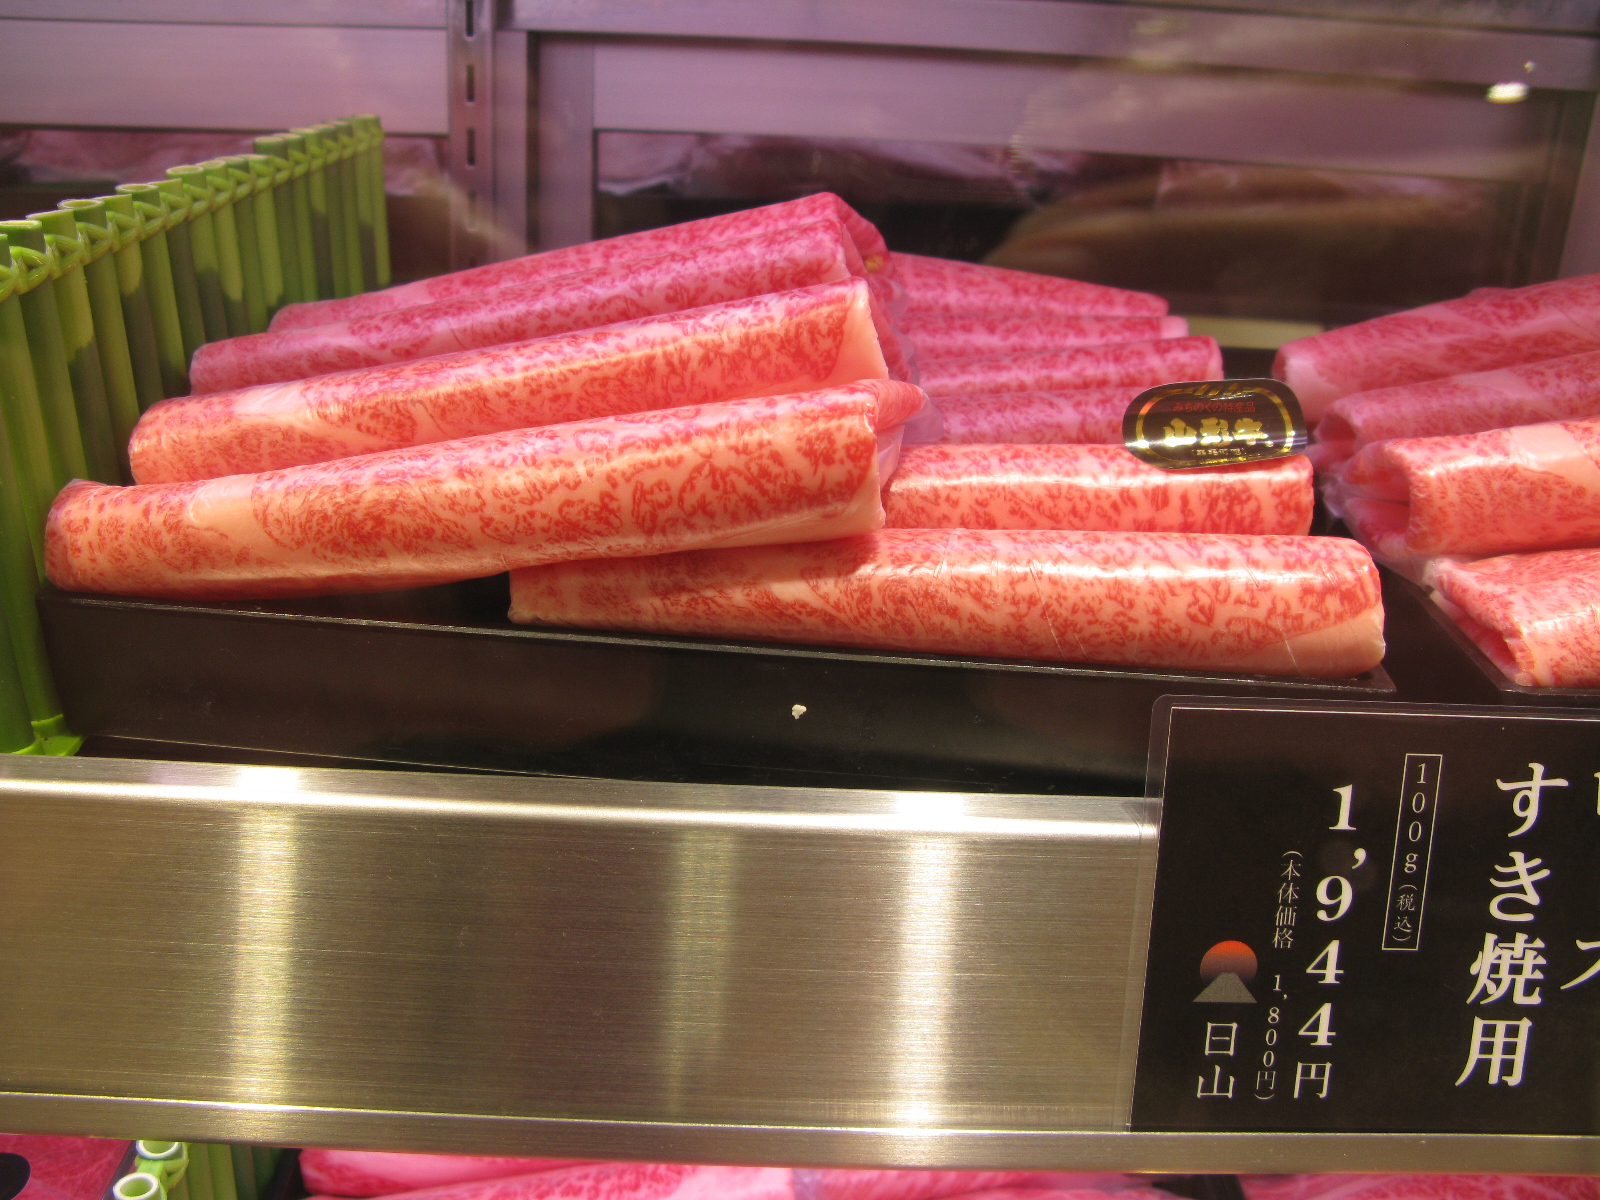 Even meat looks pretty in Japan